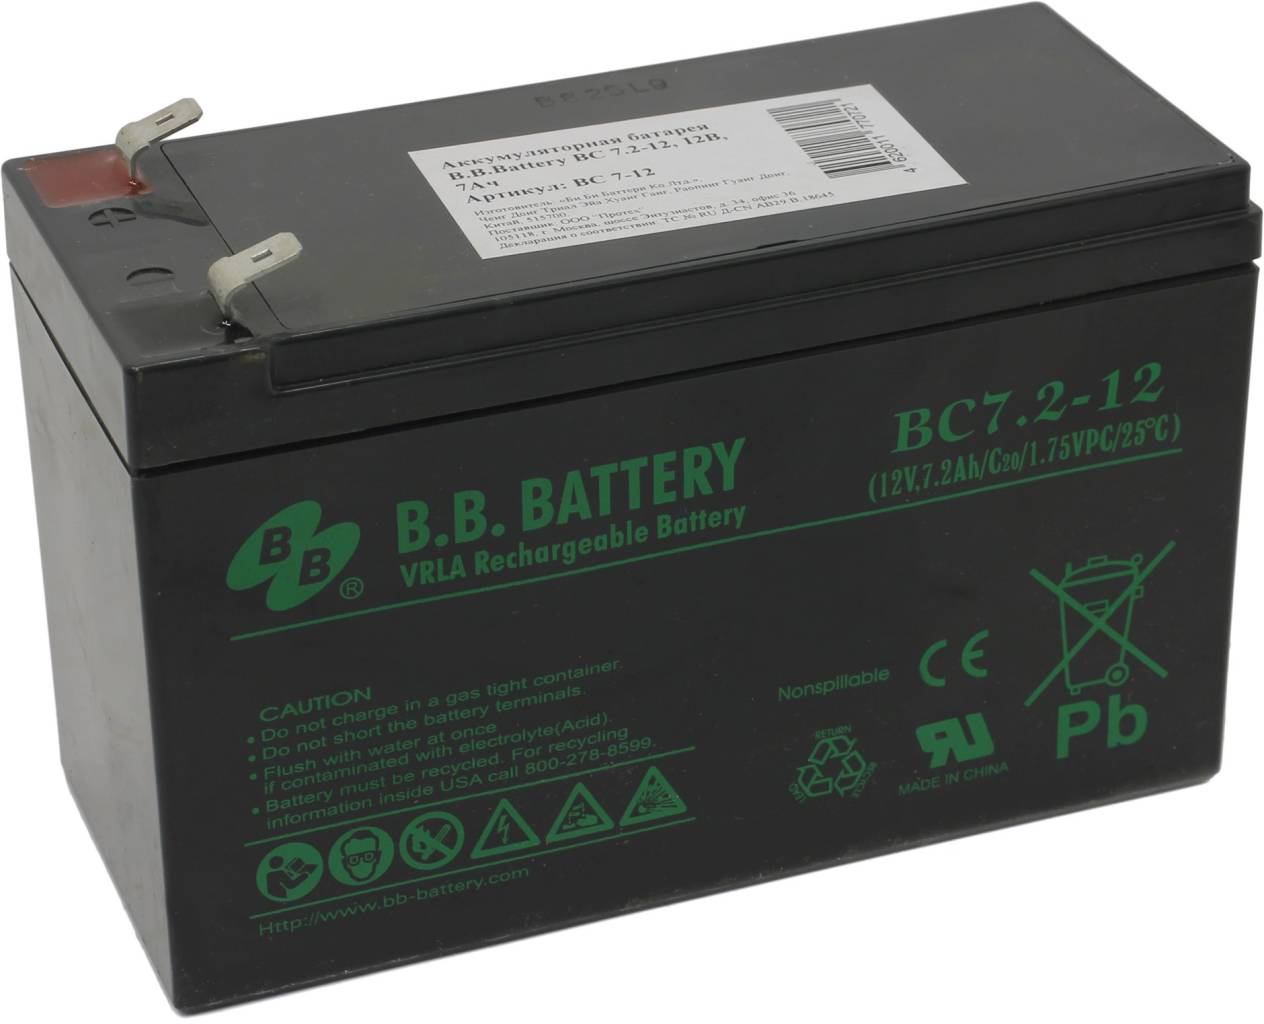   12V    7.2Ah B.B. Battery BC7.2-12  UPS